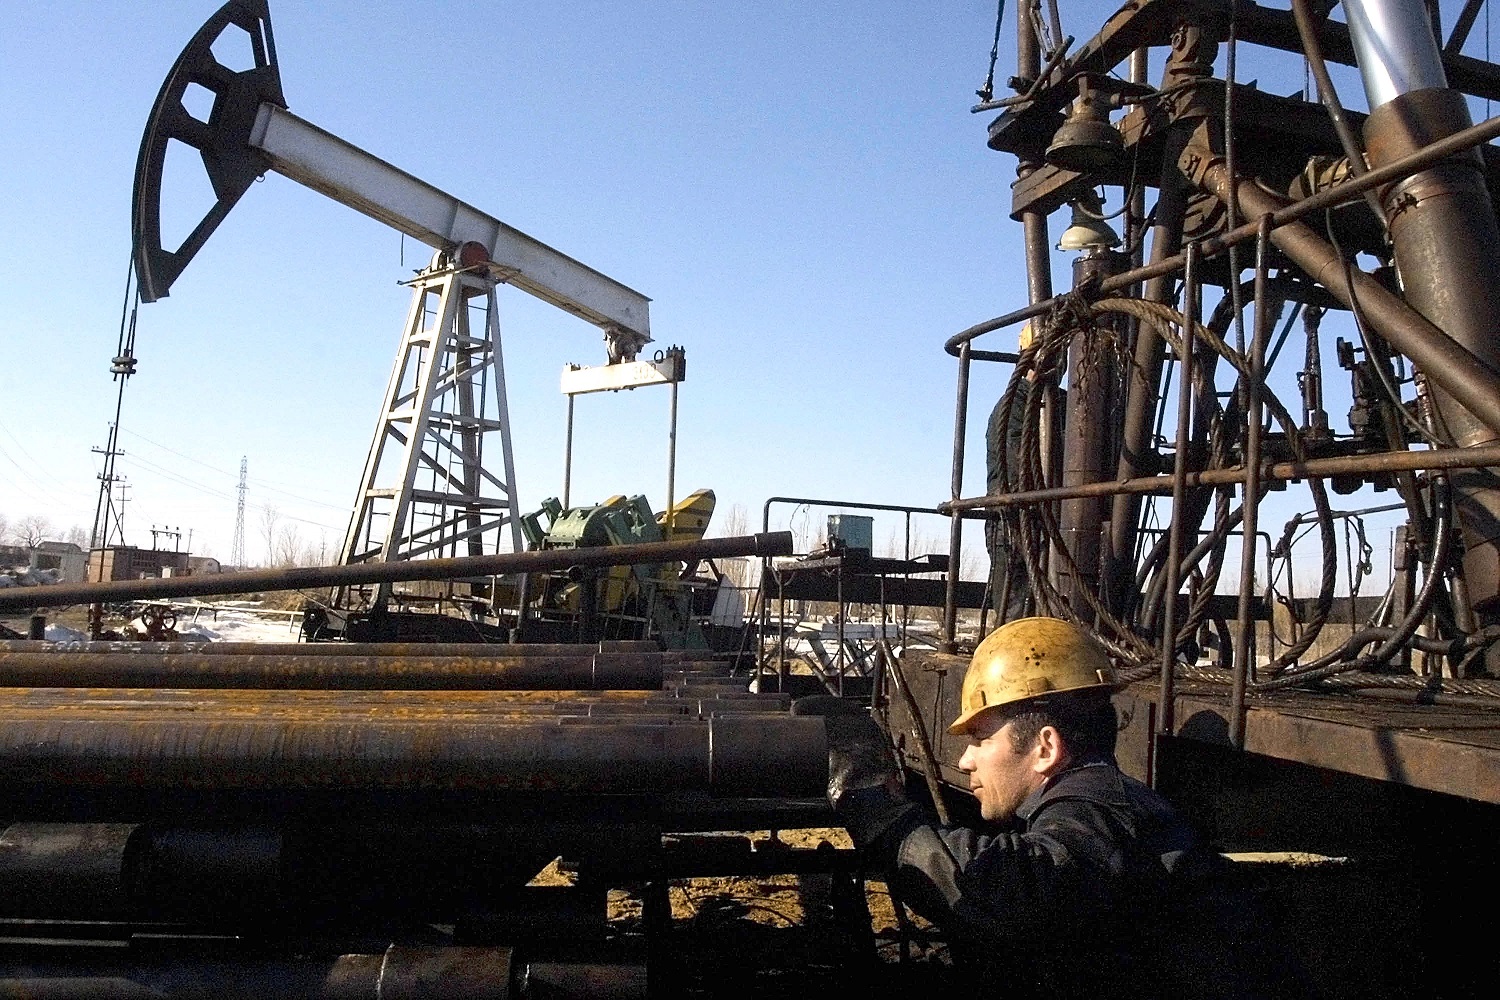 Nga “lọt” qua “kẽ hở” để vẫn kiếm tiền từ xuất khẩu dầu thô như thế nào?